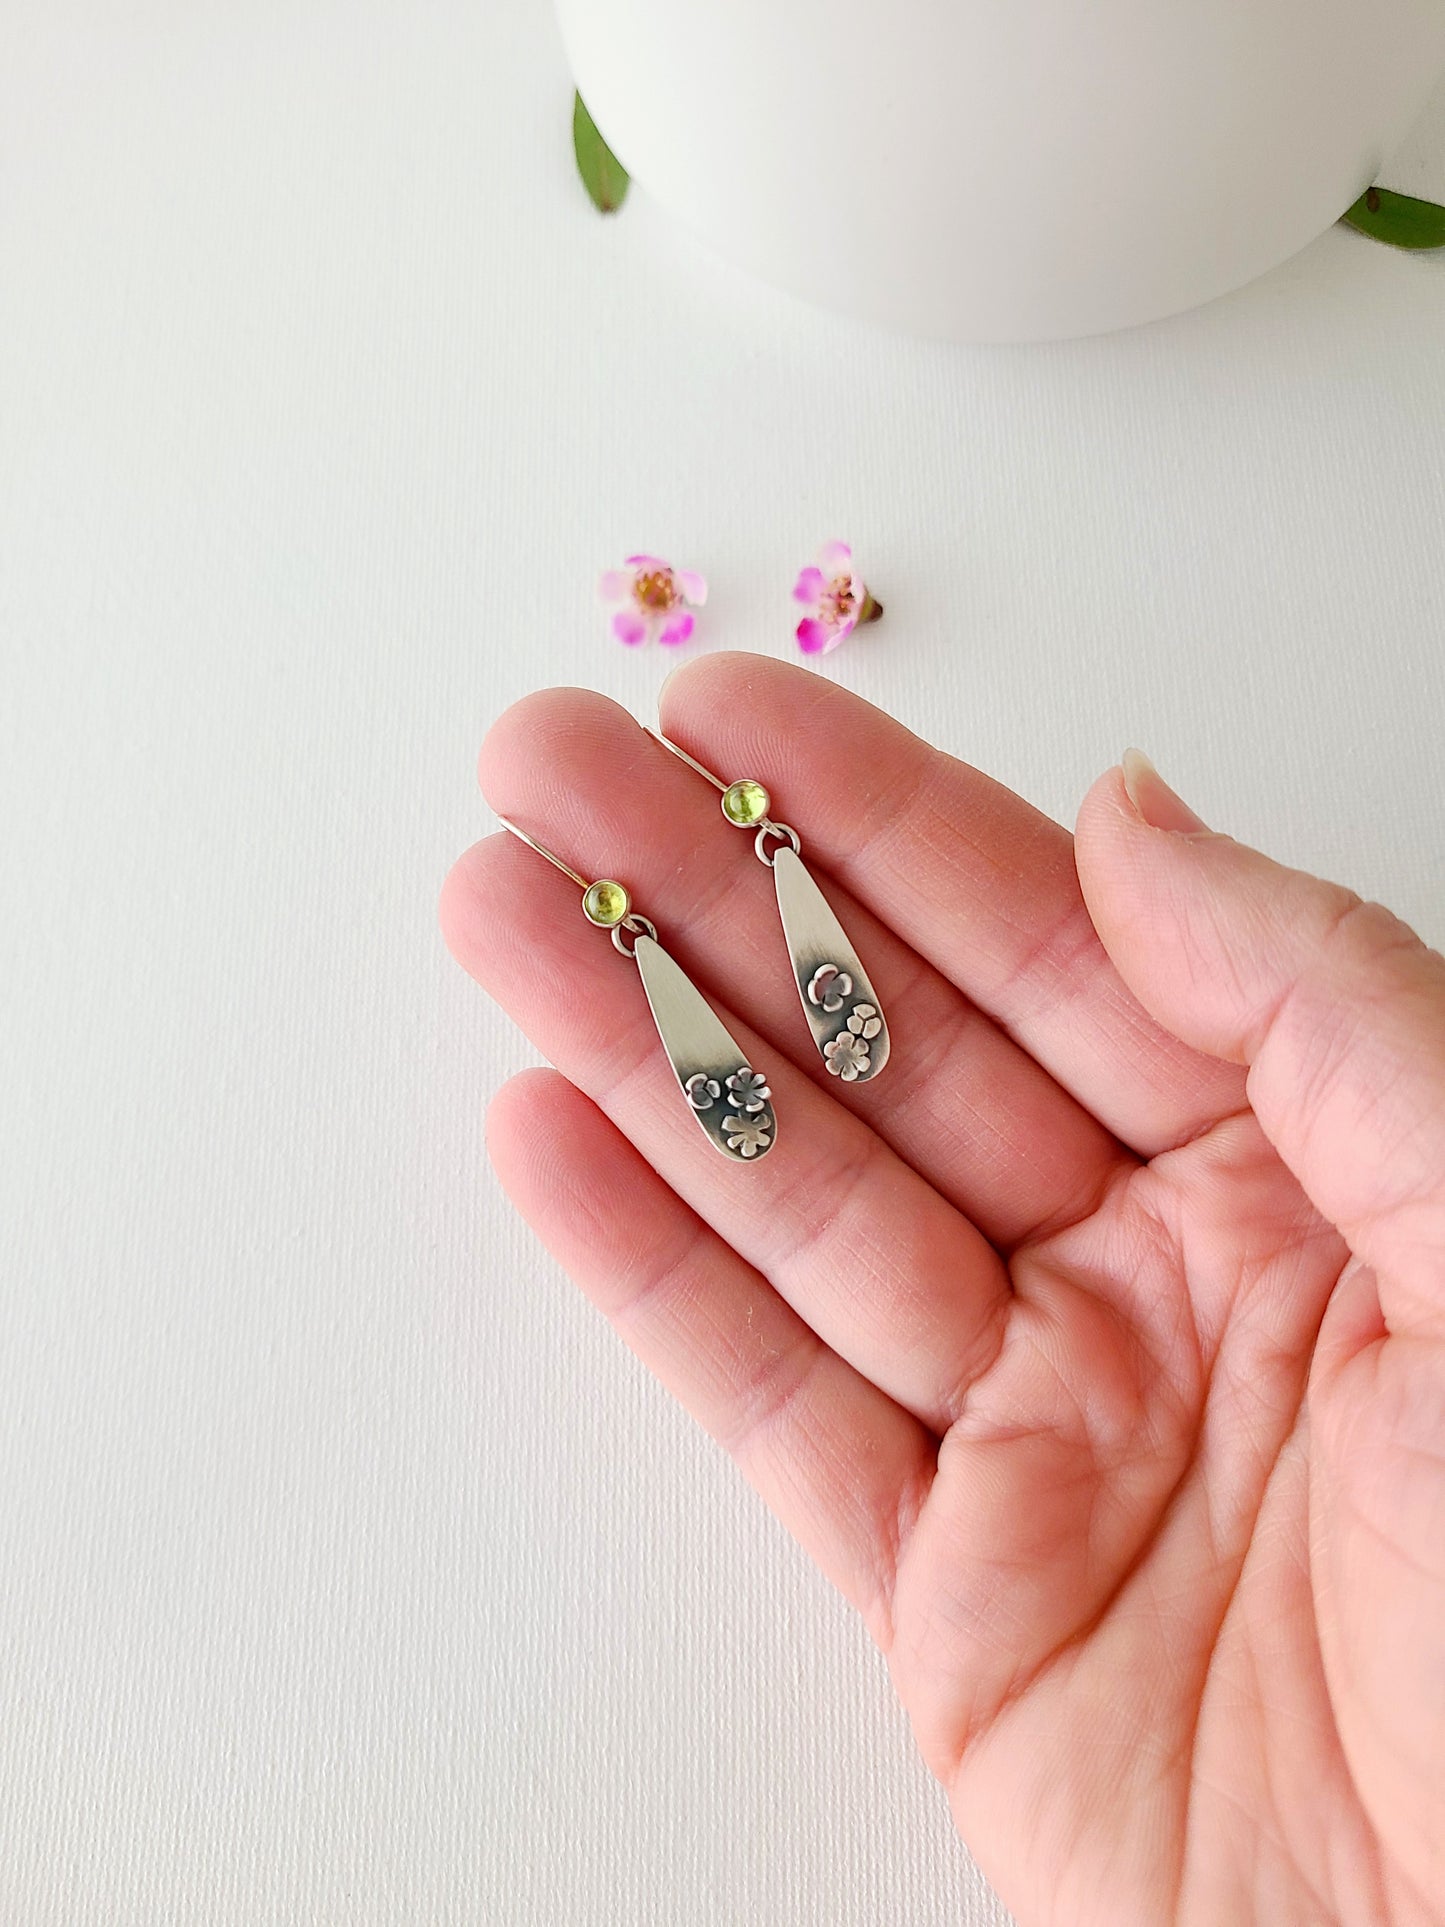 Blossom earrings-Peridot teardrop Dangle